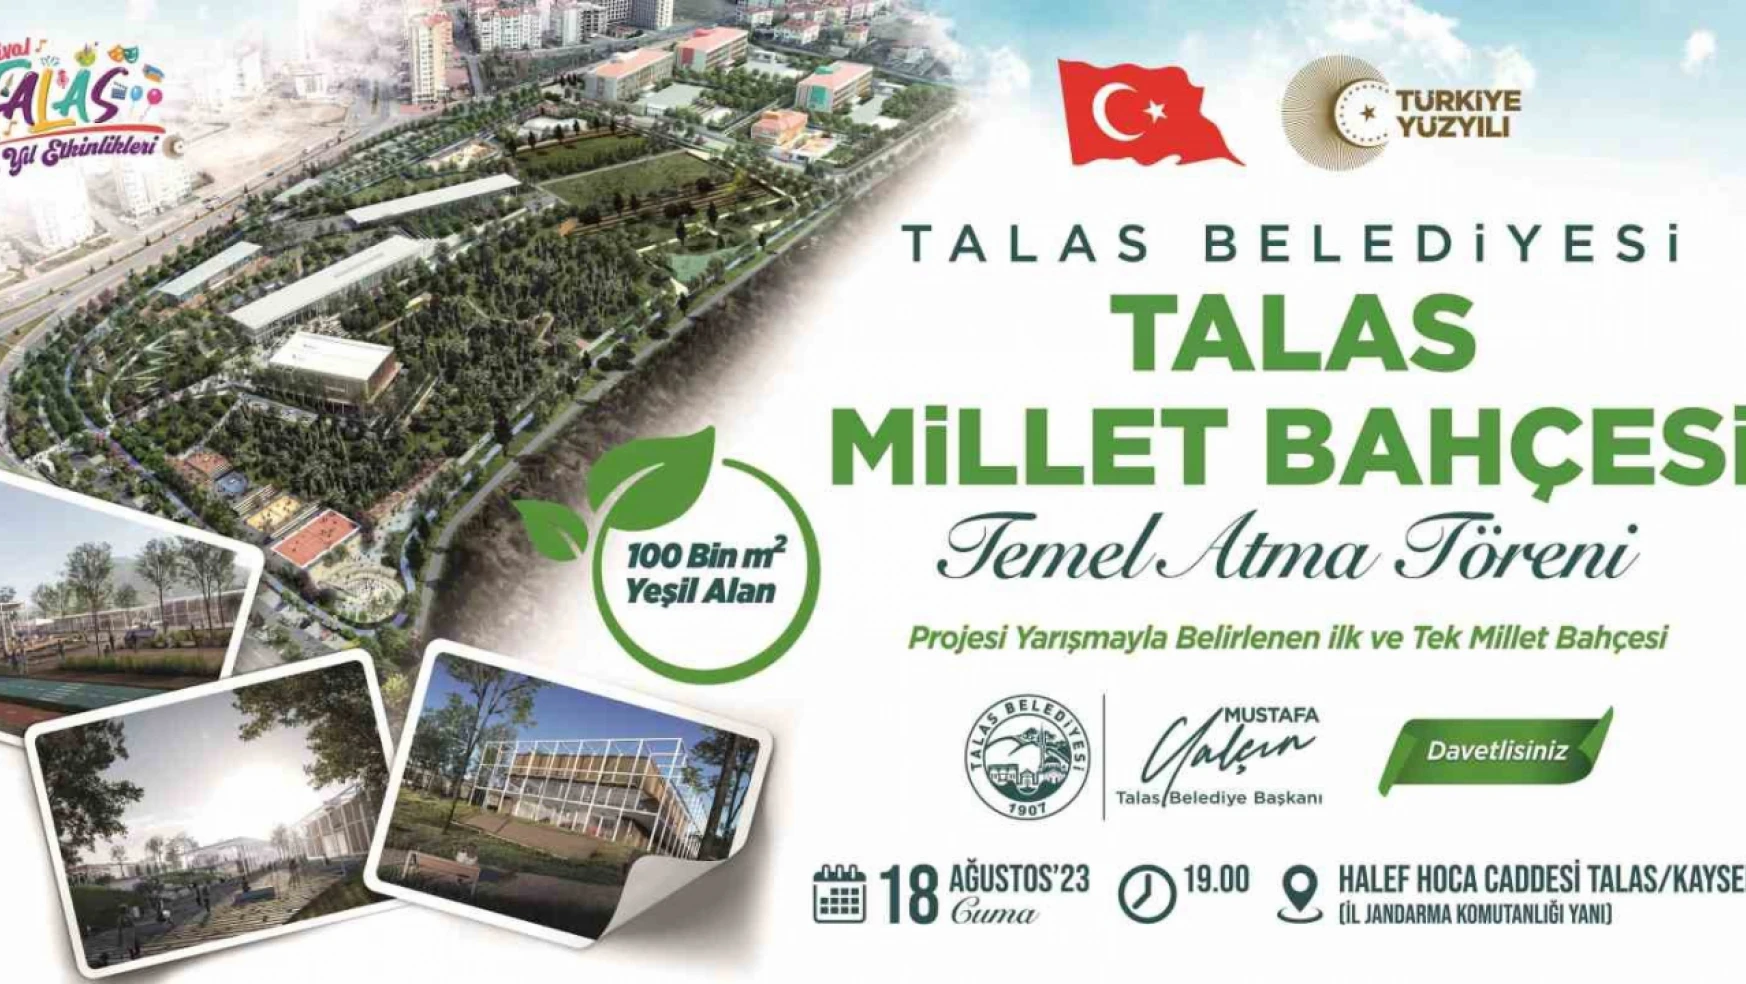 Talas Millet Bahçesi'ne İlk Harç Konuyor